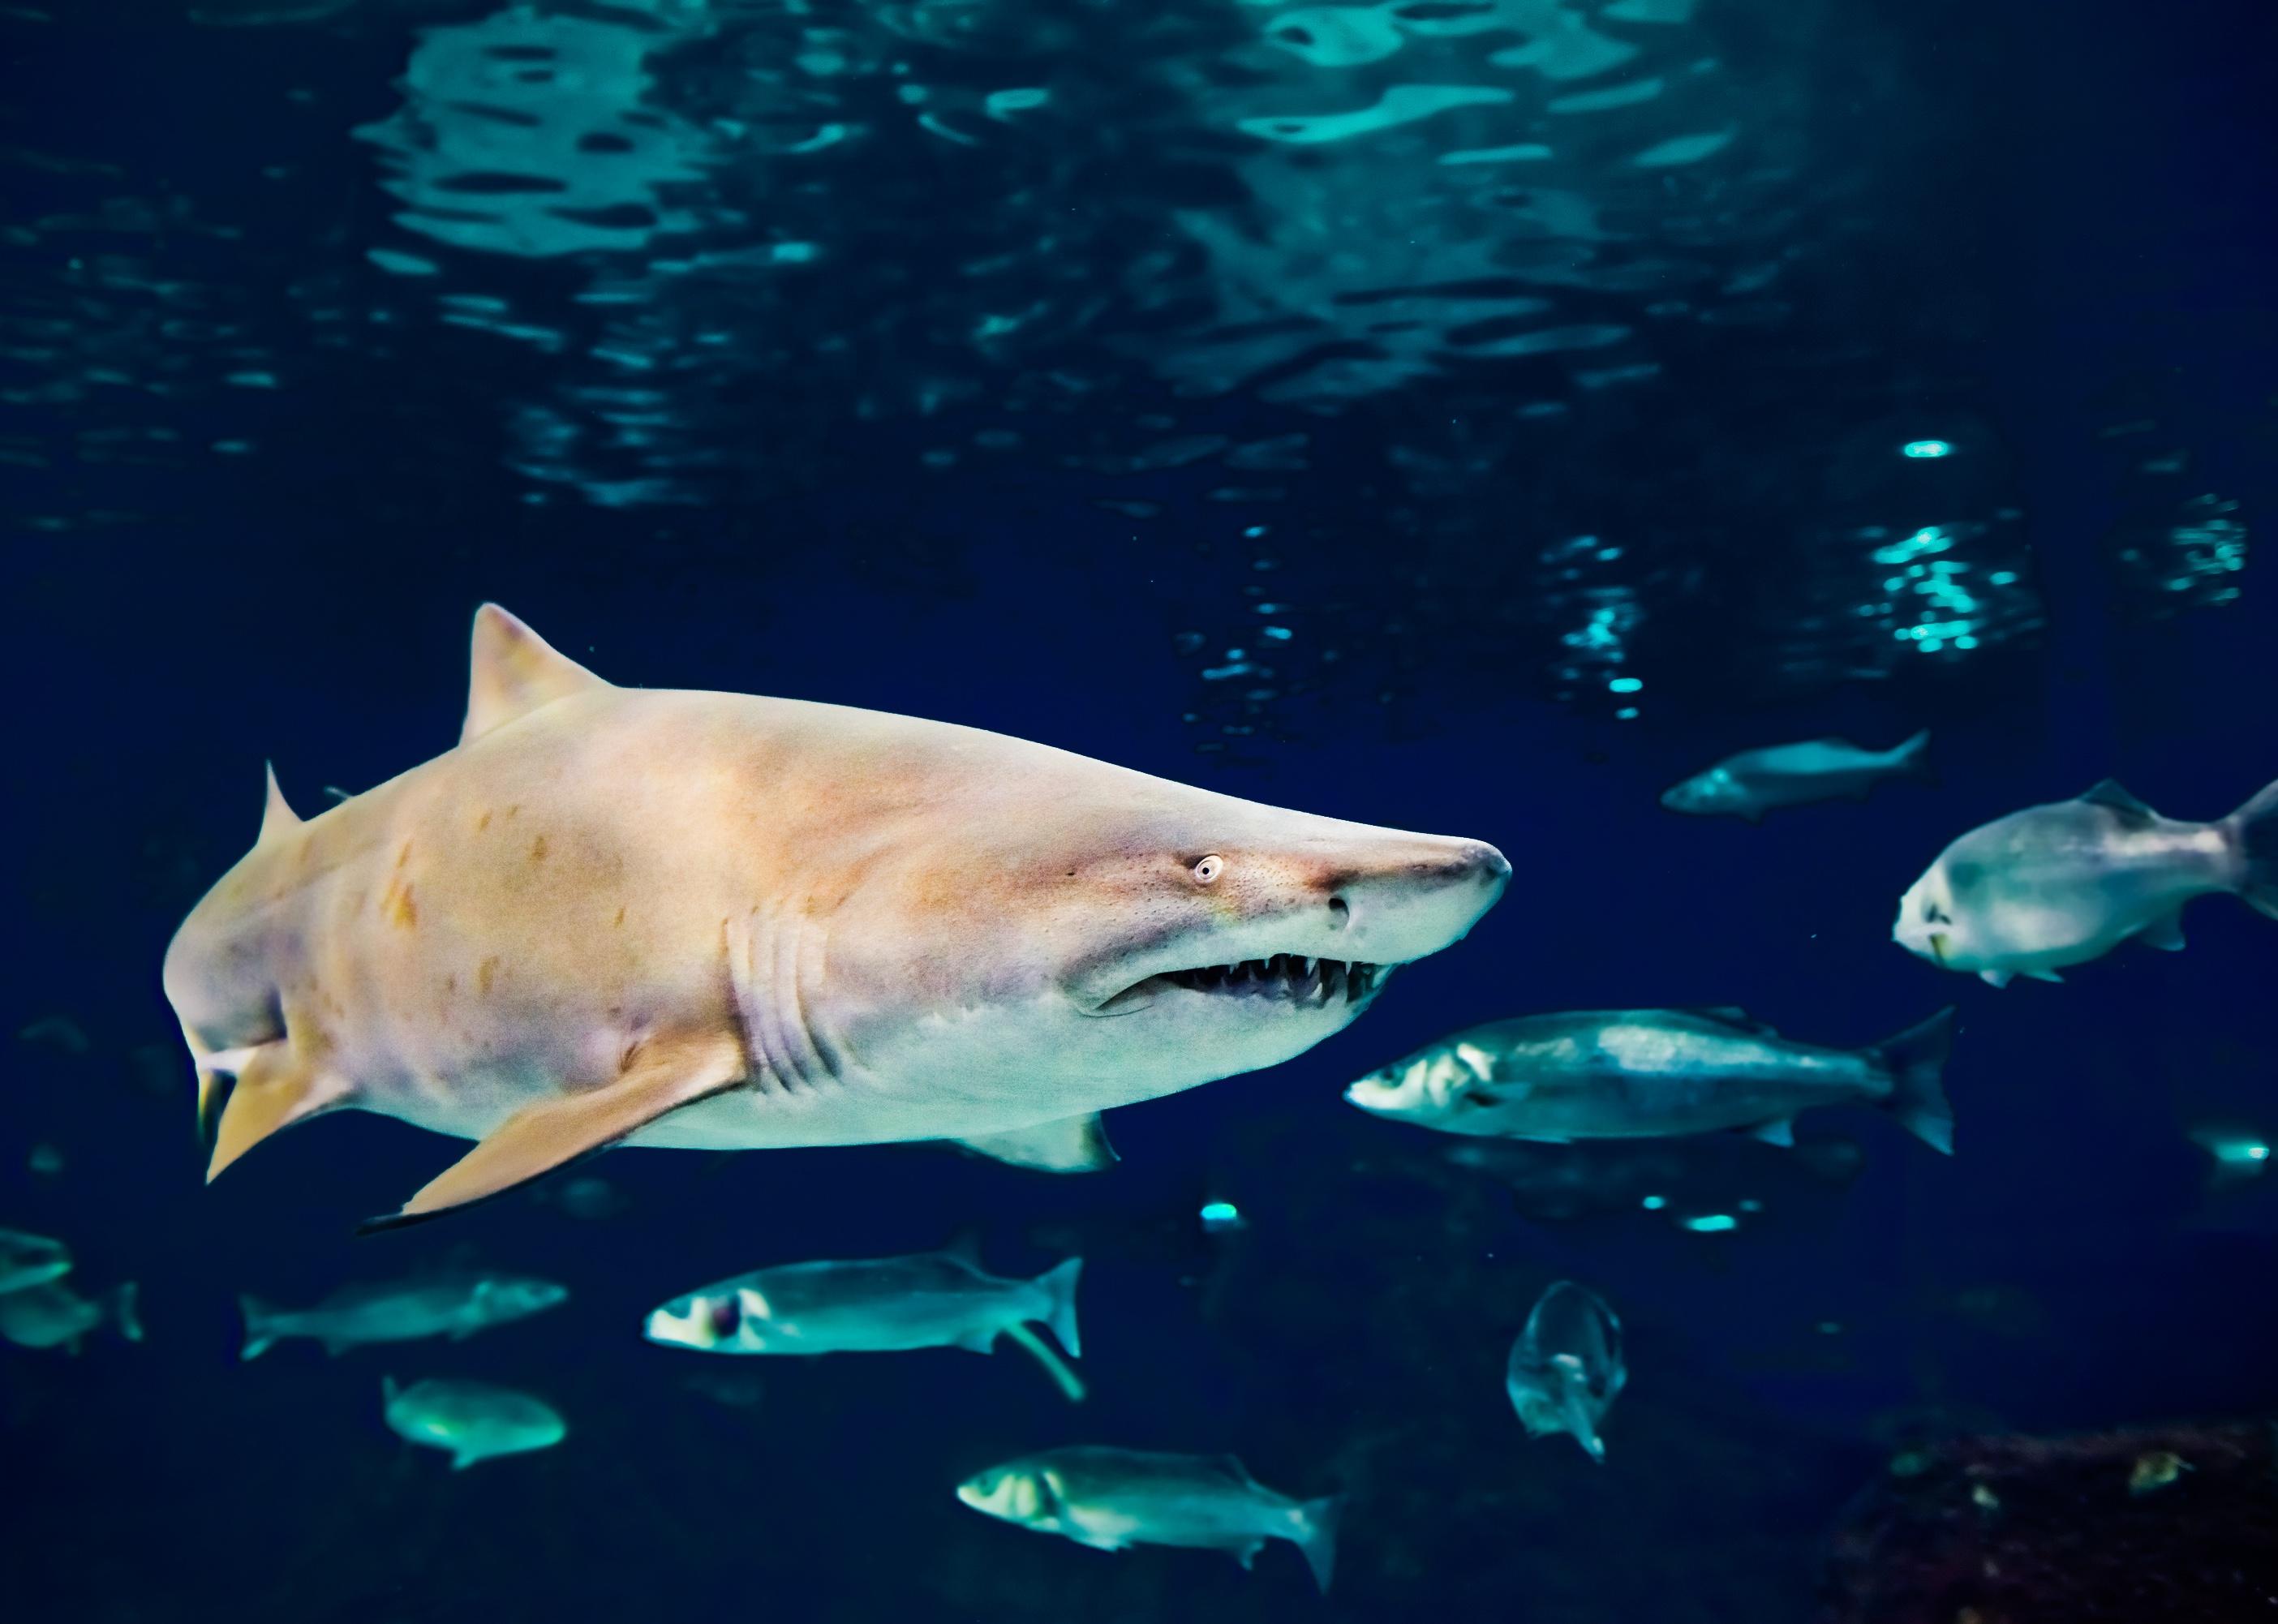 Sand tiger shark underwater close up portrait.